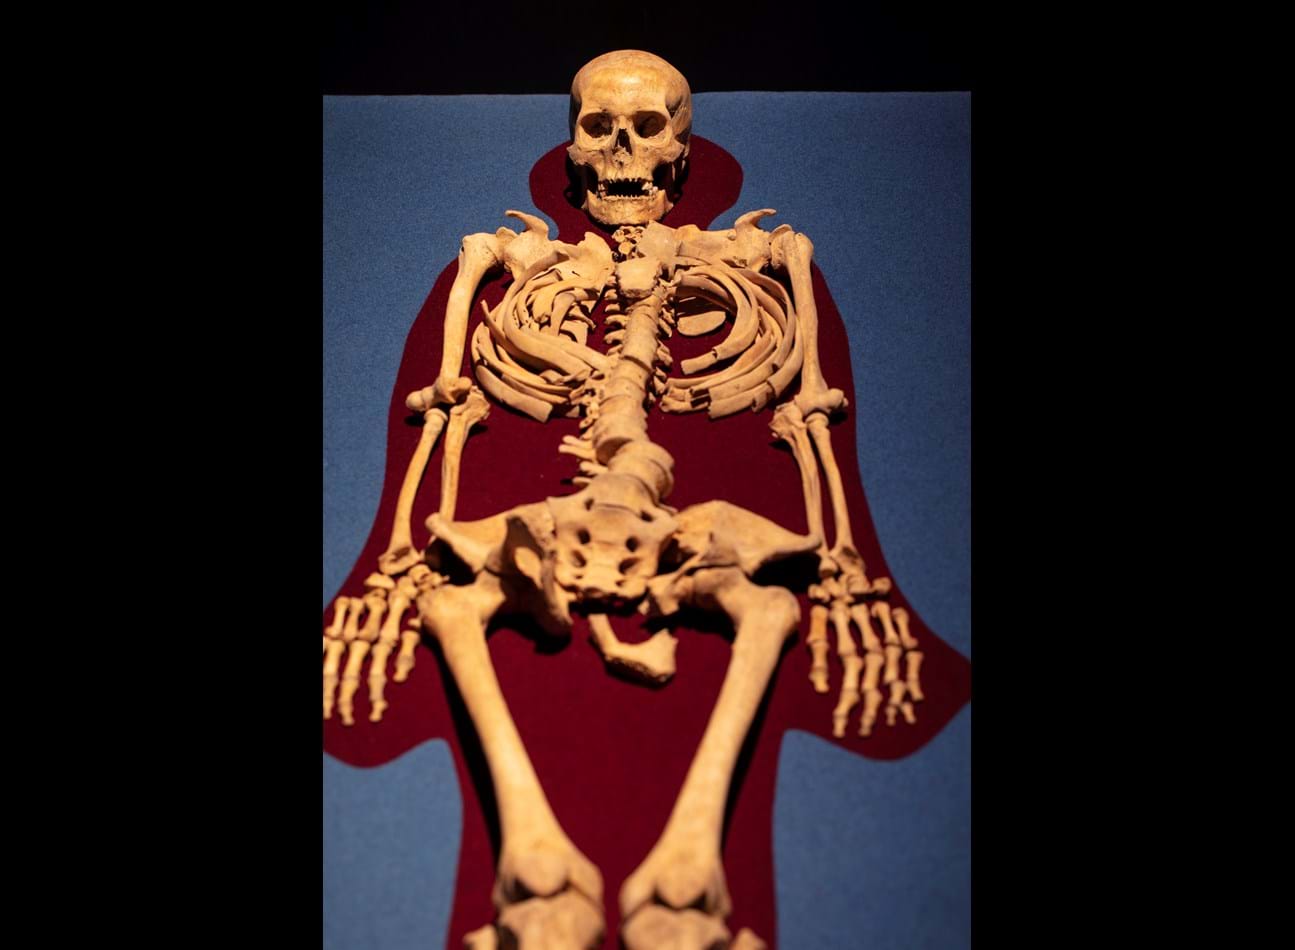 Filt i to farver under skeletter i udstillingsmontre